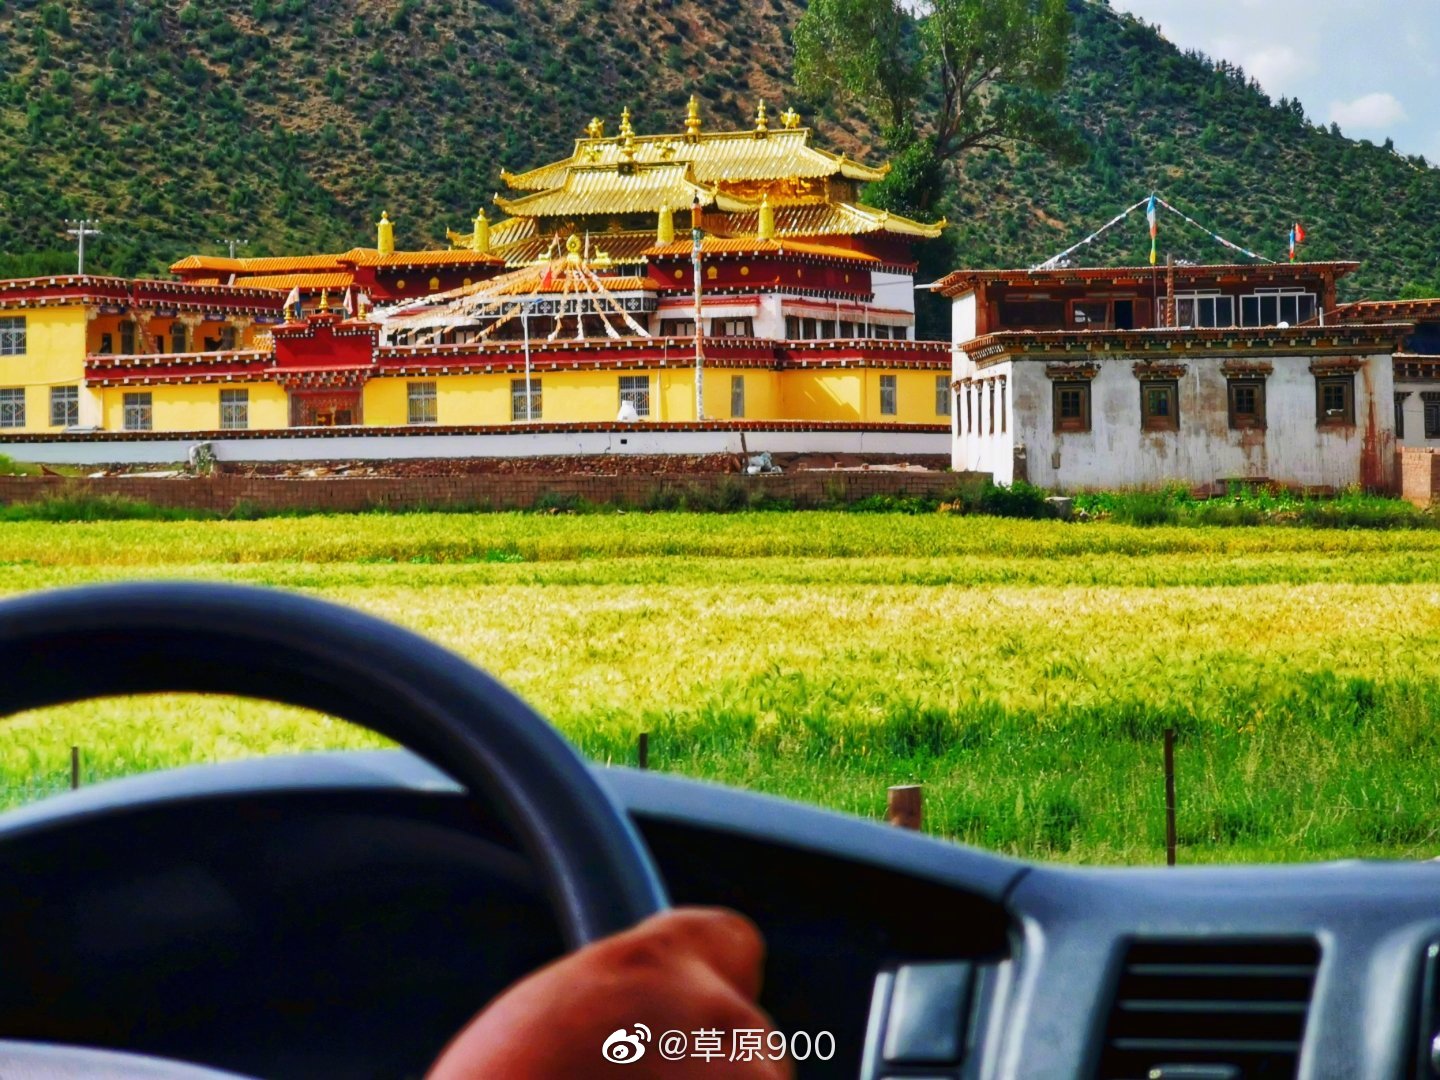 西藏昌都風景圖片 - 芒康-滇藏川藏交匯 | Tibet Photos: Chamdo Images, Wallpapers